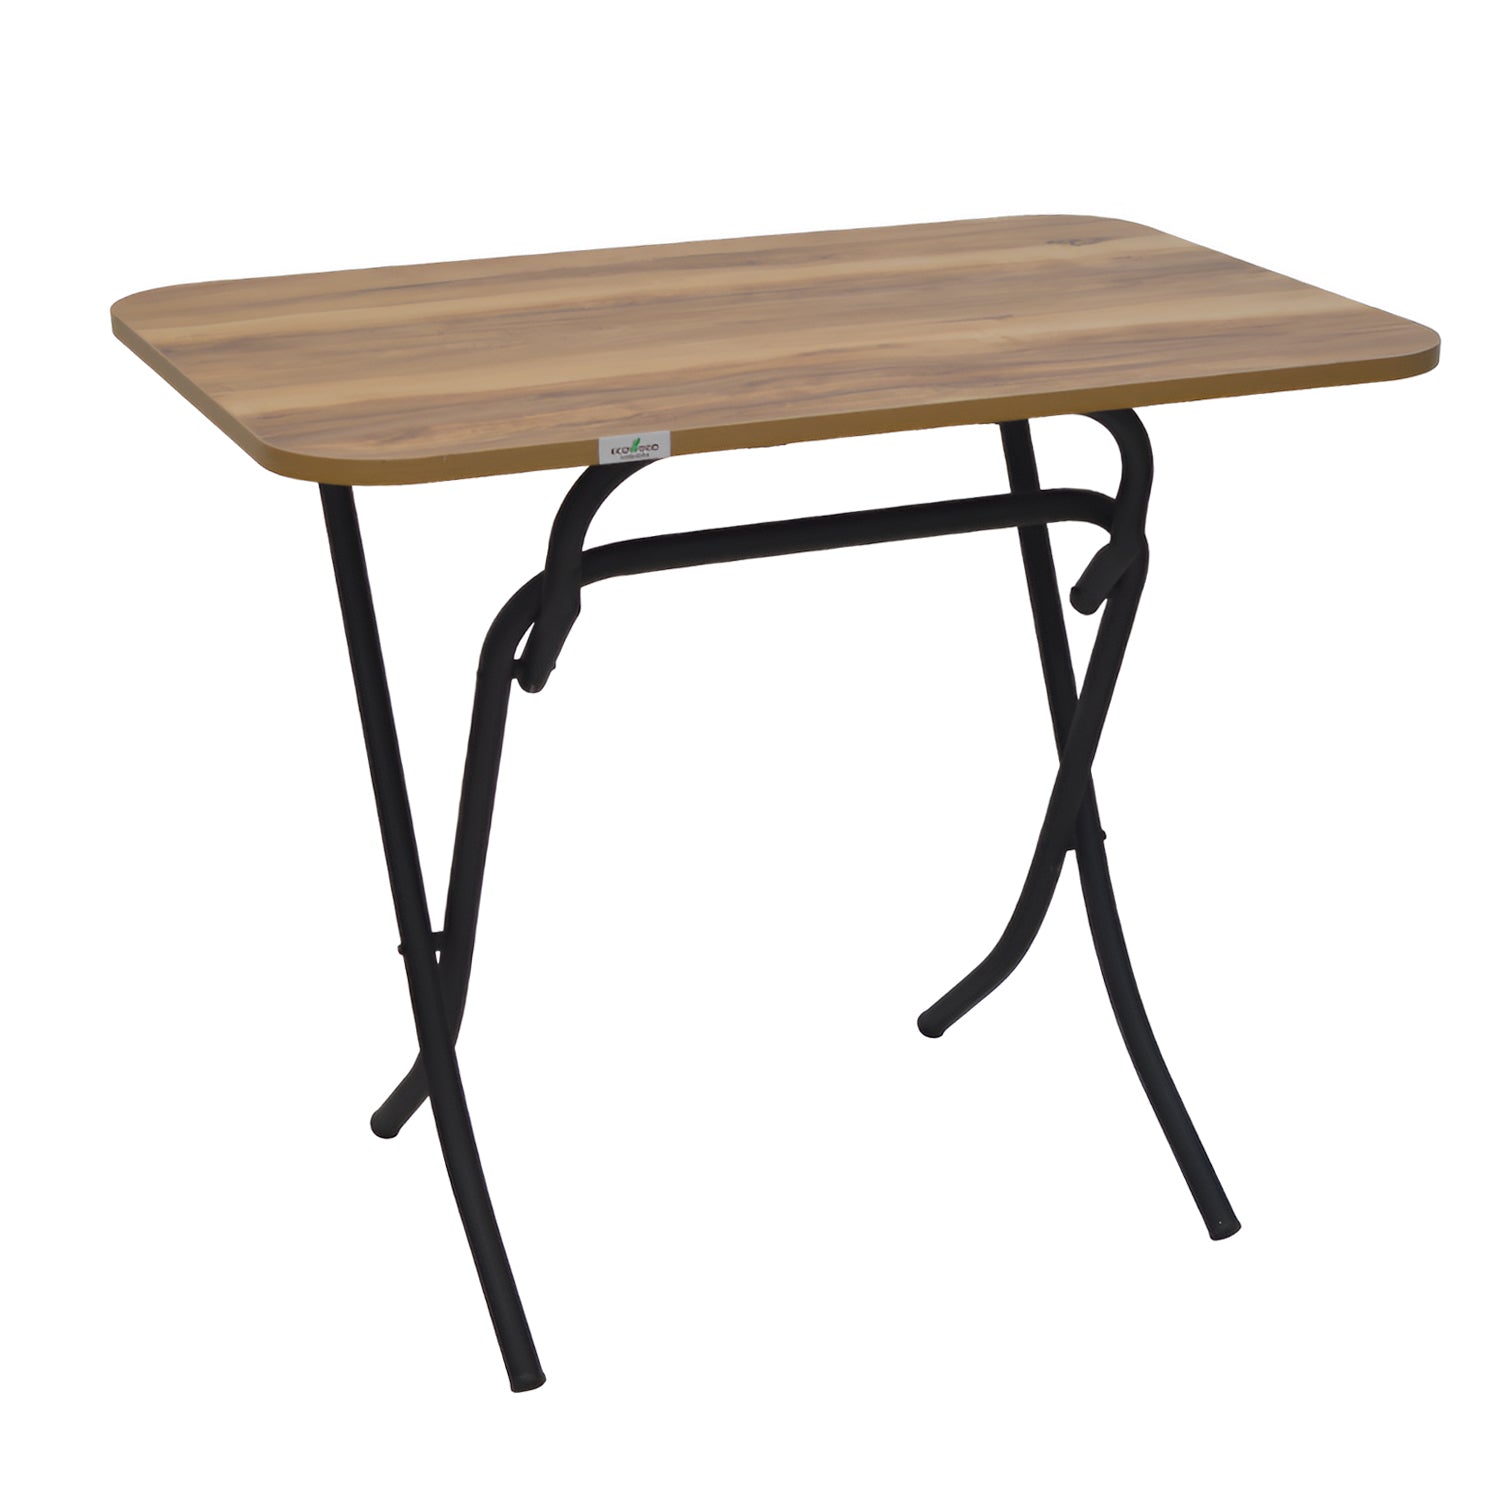 طاولة مستطيلة من الخشب قابلة للطي 90*60 سم